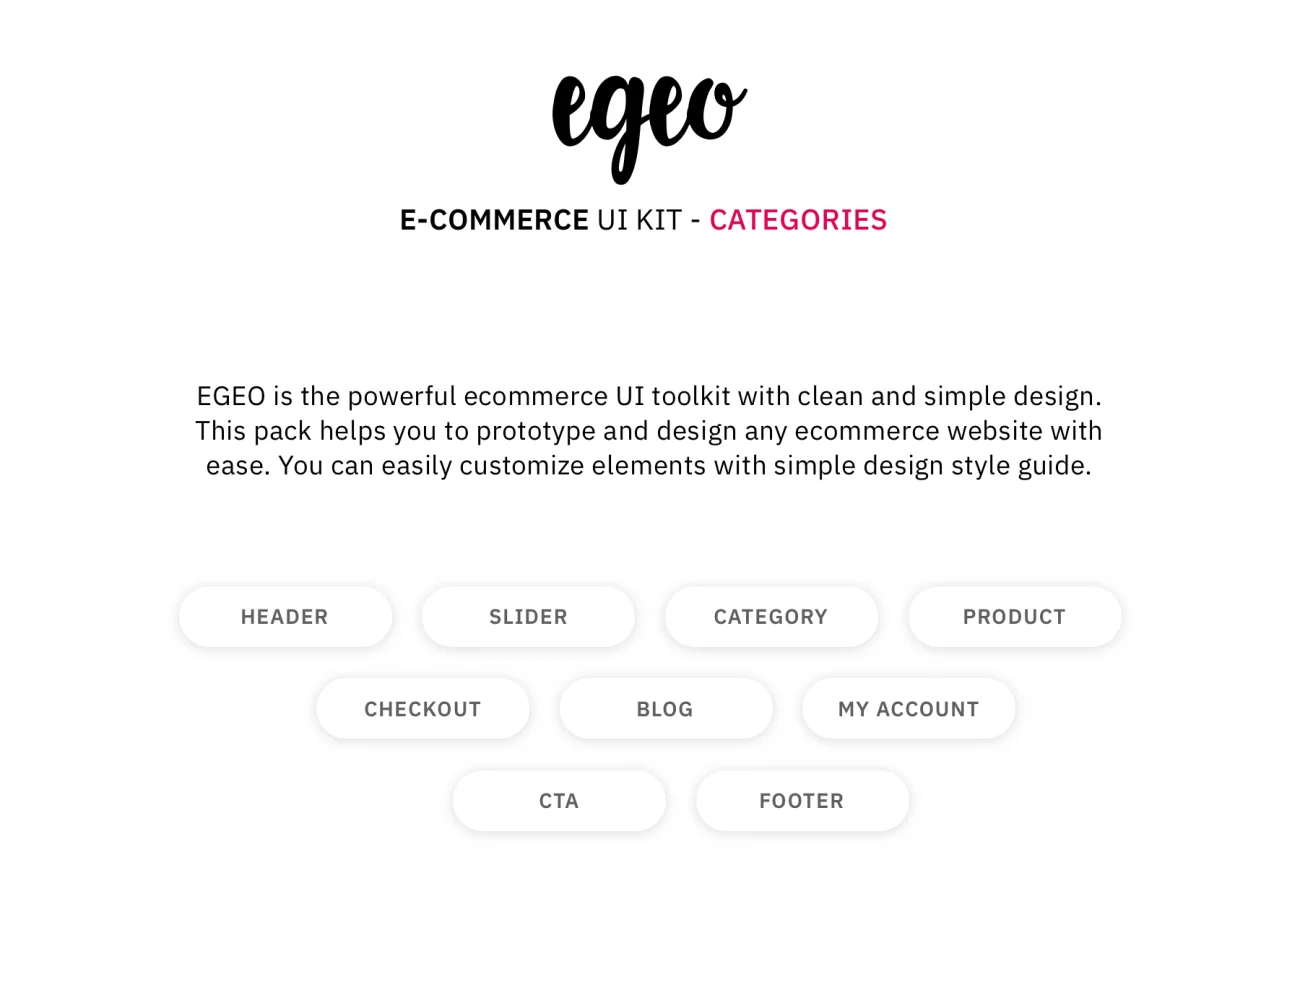 EGEO E-Commerce UI Kit 潮流服饰包包配件电子商务用户界面套件-ui套件、主页、介绍、付款、列表、卡片式、引导页、支付、海报、登录页、着陆页、网购、表单、详情-到位啦UI